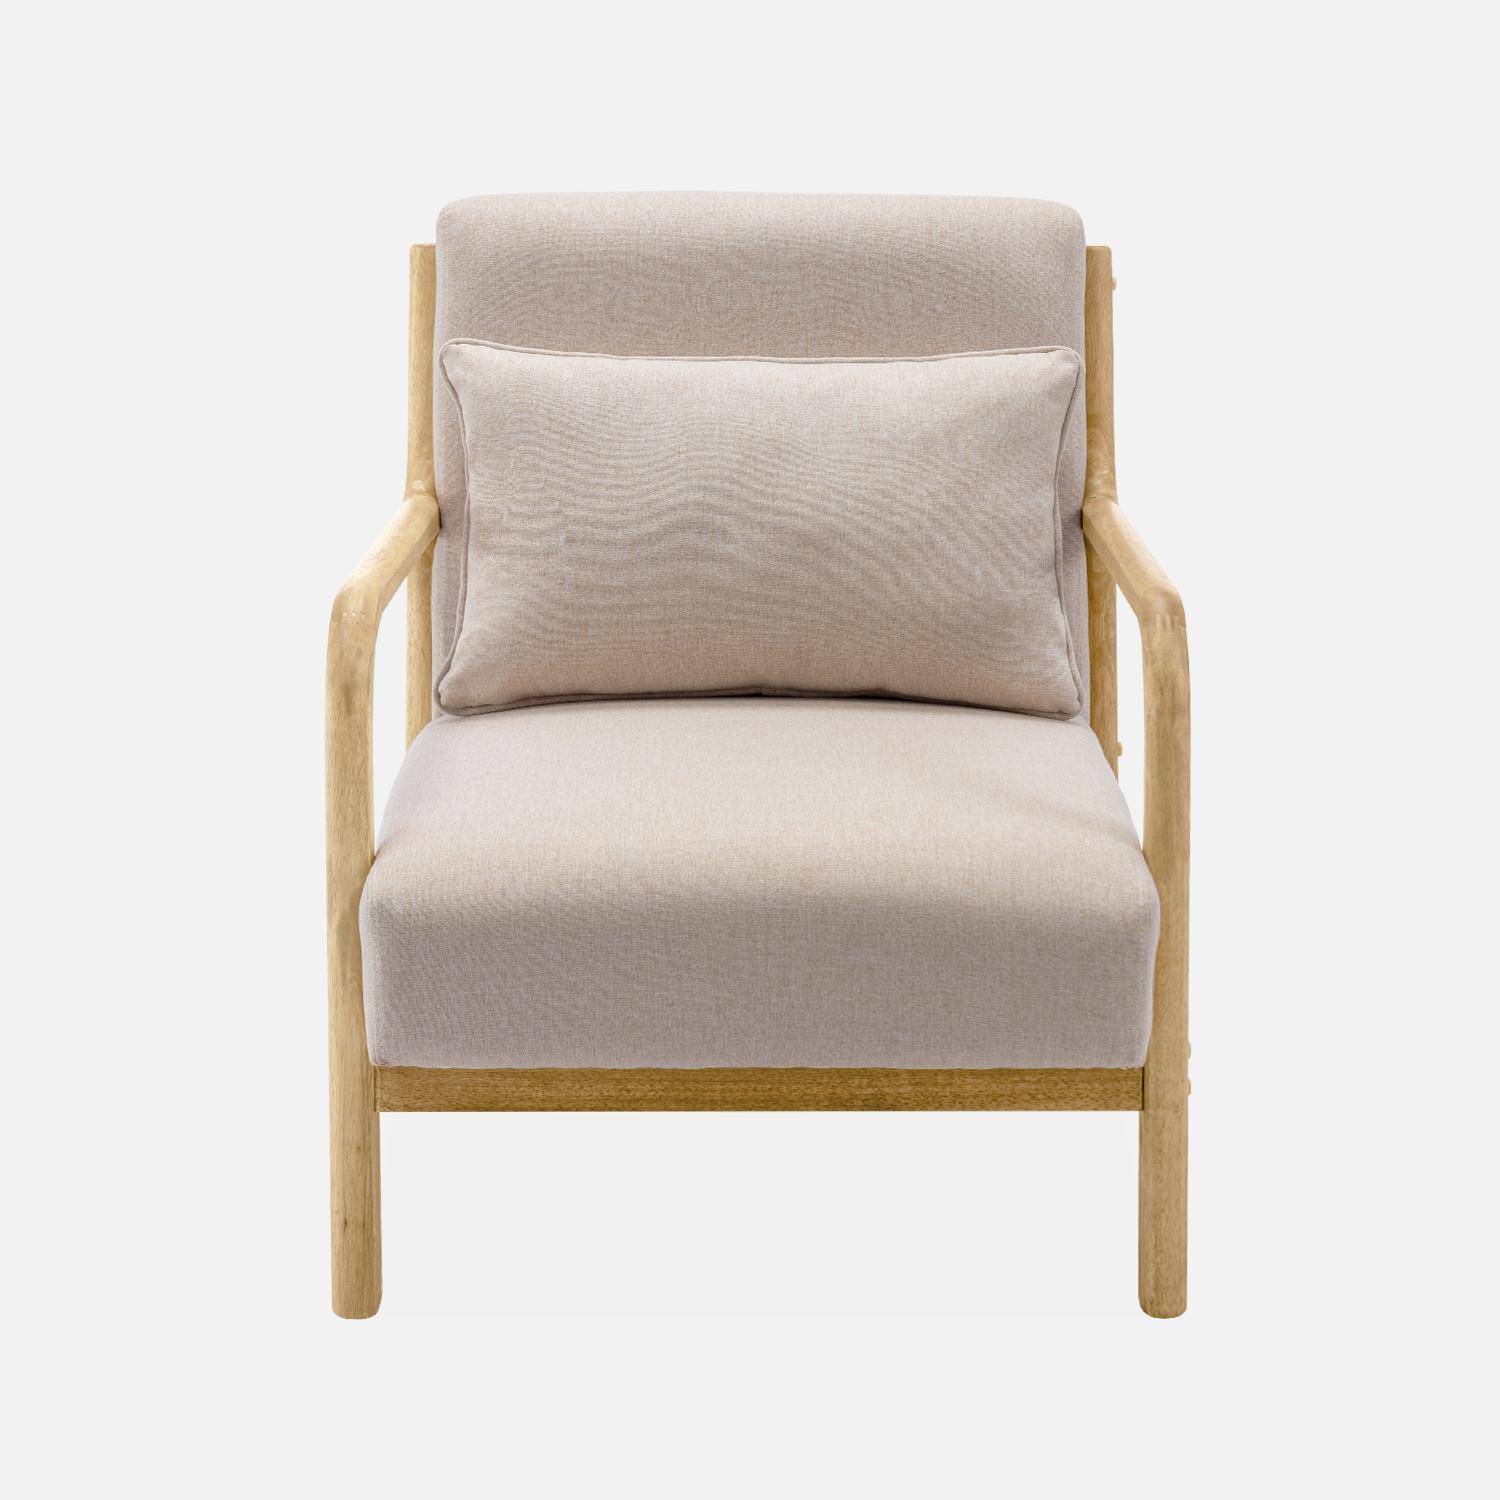 Poltrona di design in legno e tessuto, 1 seduta fissa diritta, pieds compas scandinave, beige Photo5